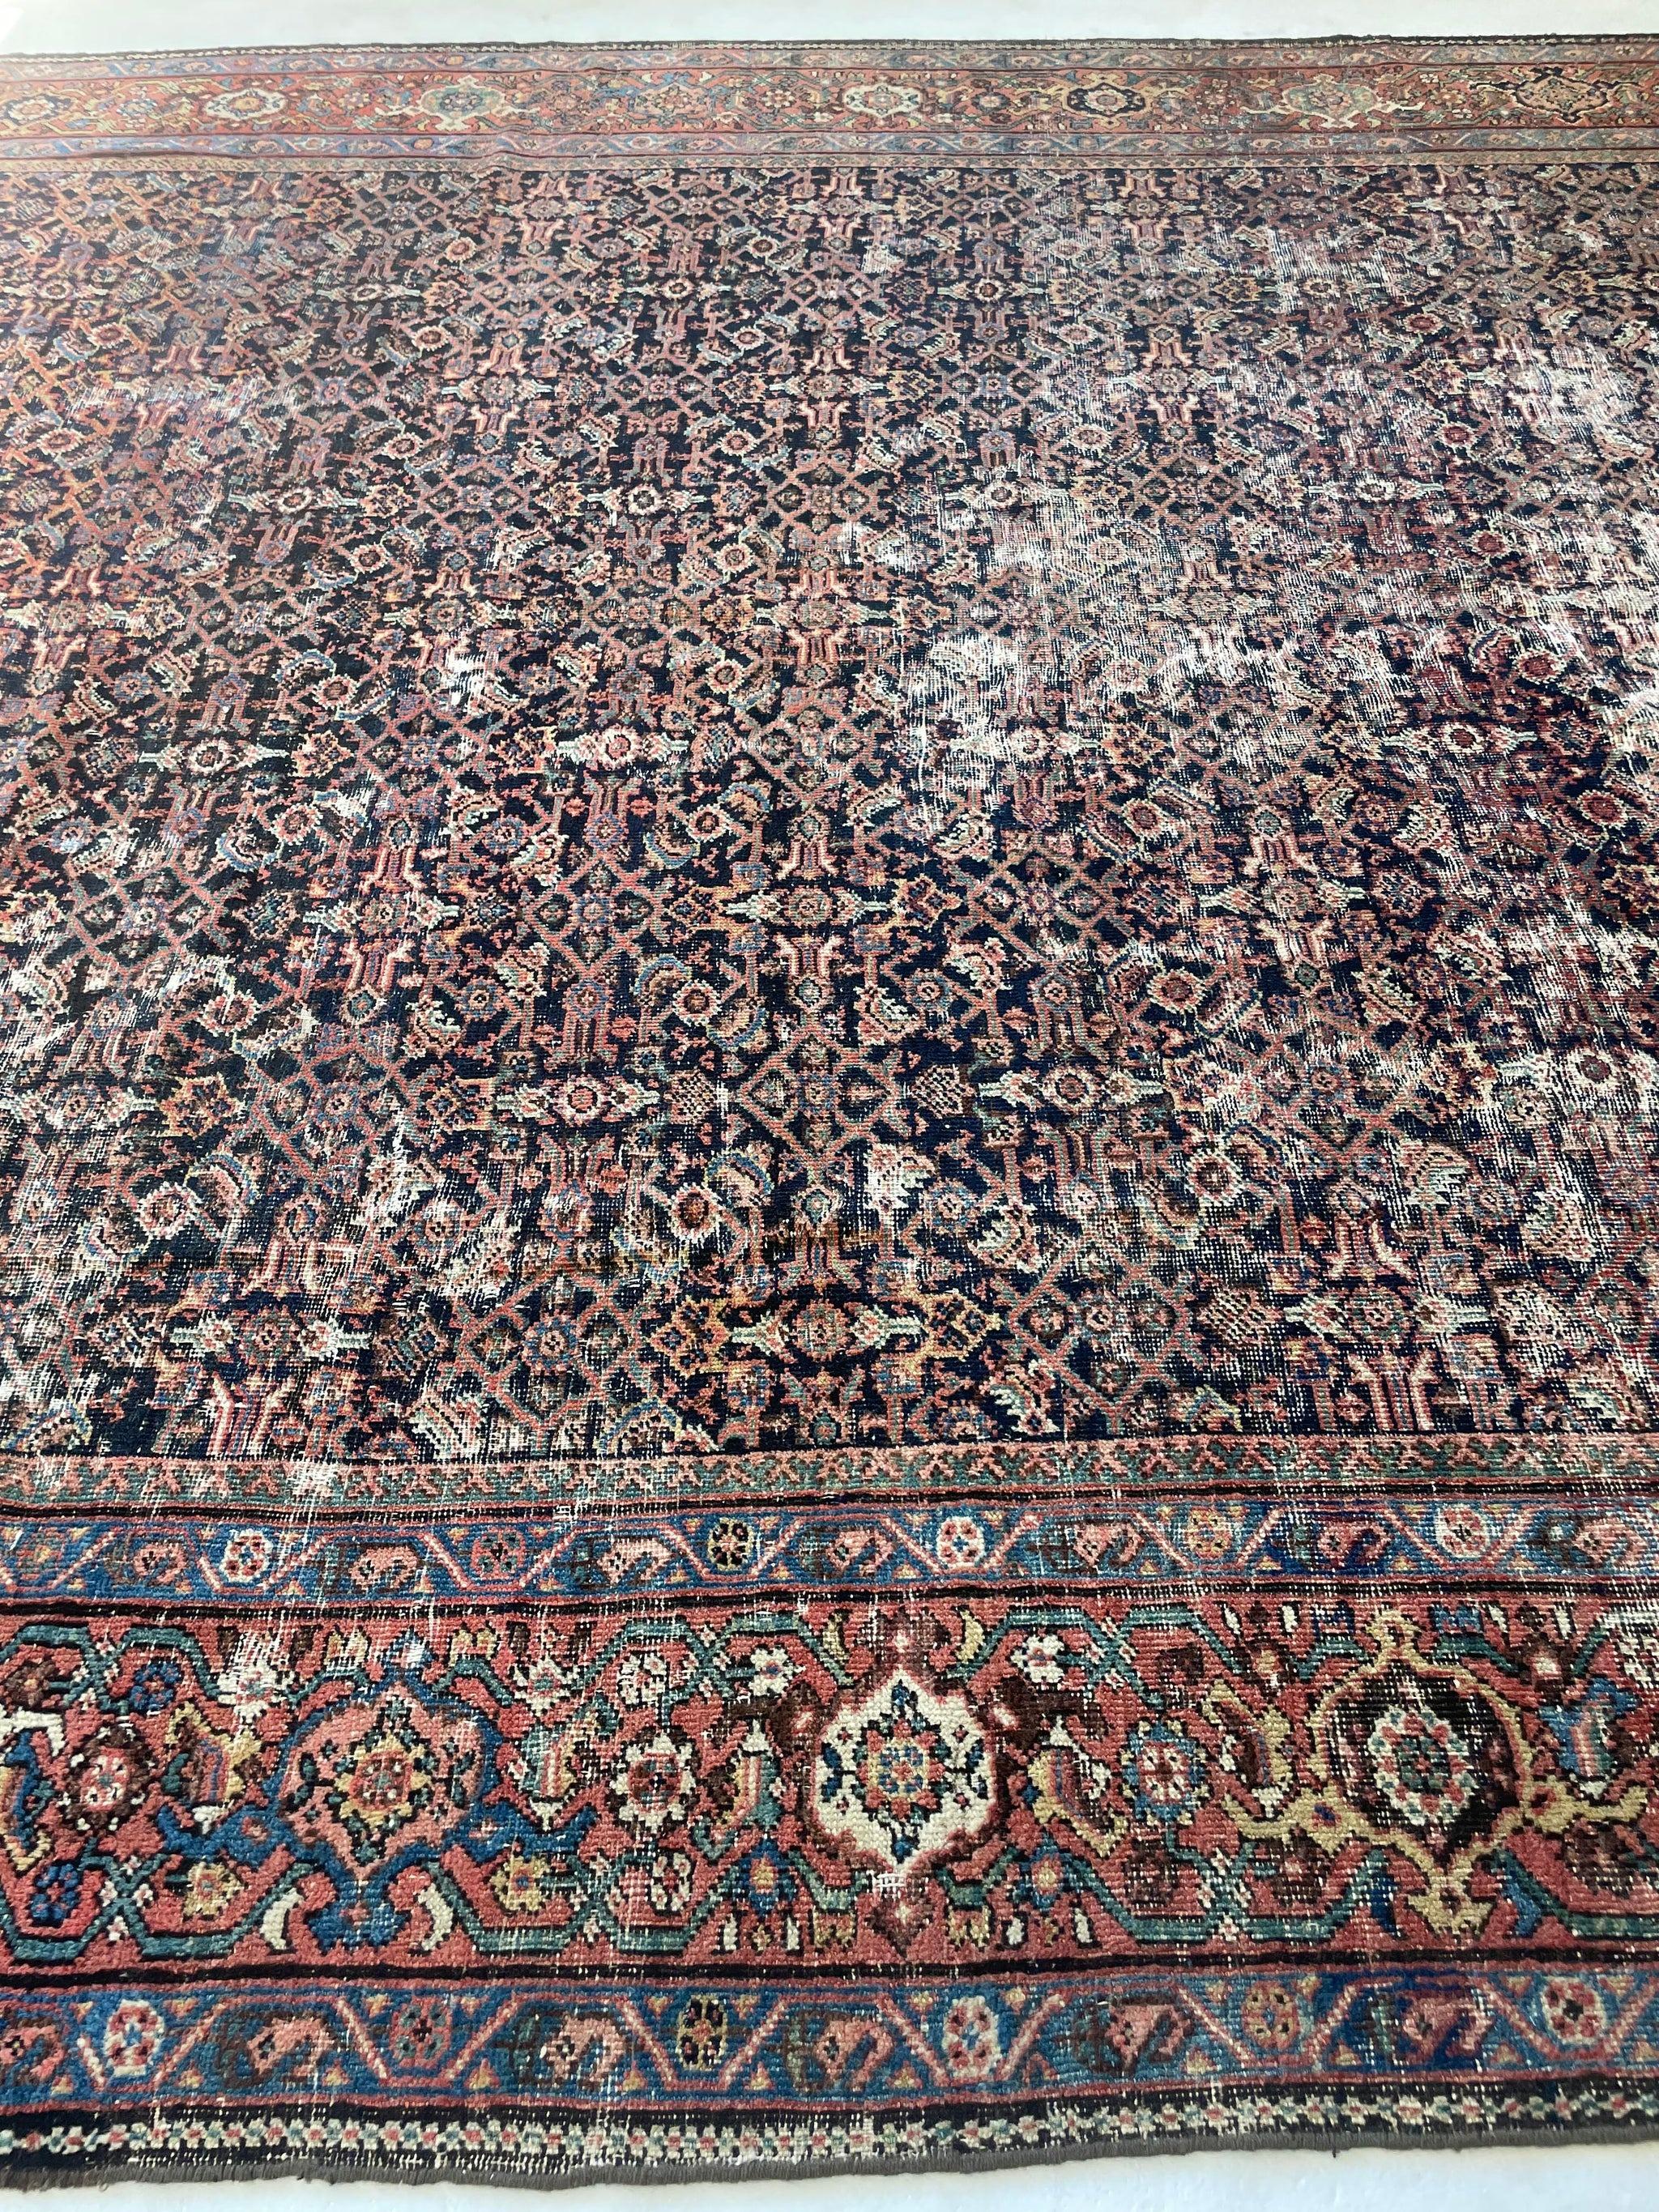 Antique Persian Carpet Rug in Deep Old-World Indigo, circa 1900-1915's For Sale 10